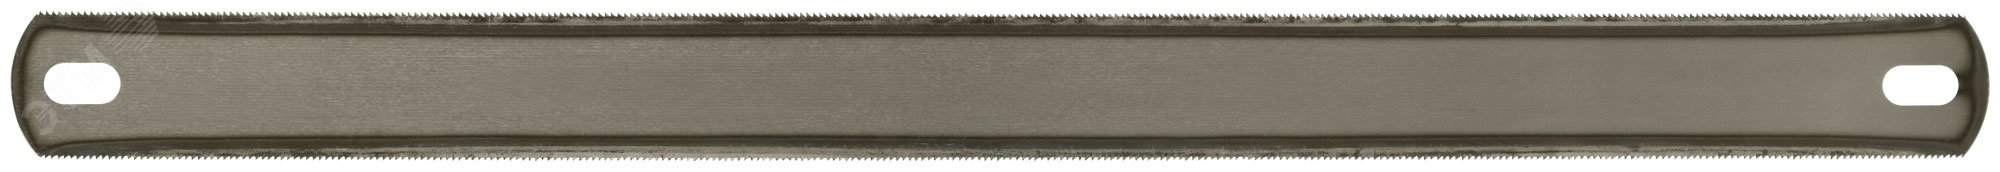 Полотно ножовочное по металлу 300 мм 2-х стороннее (ВИЗ) 40193 РОС - превью